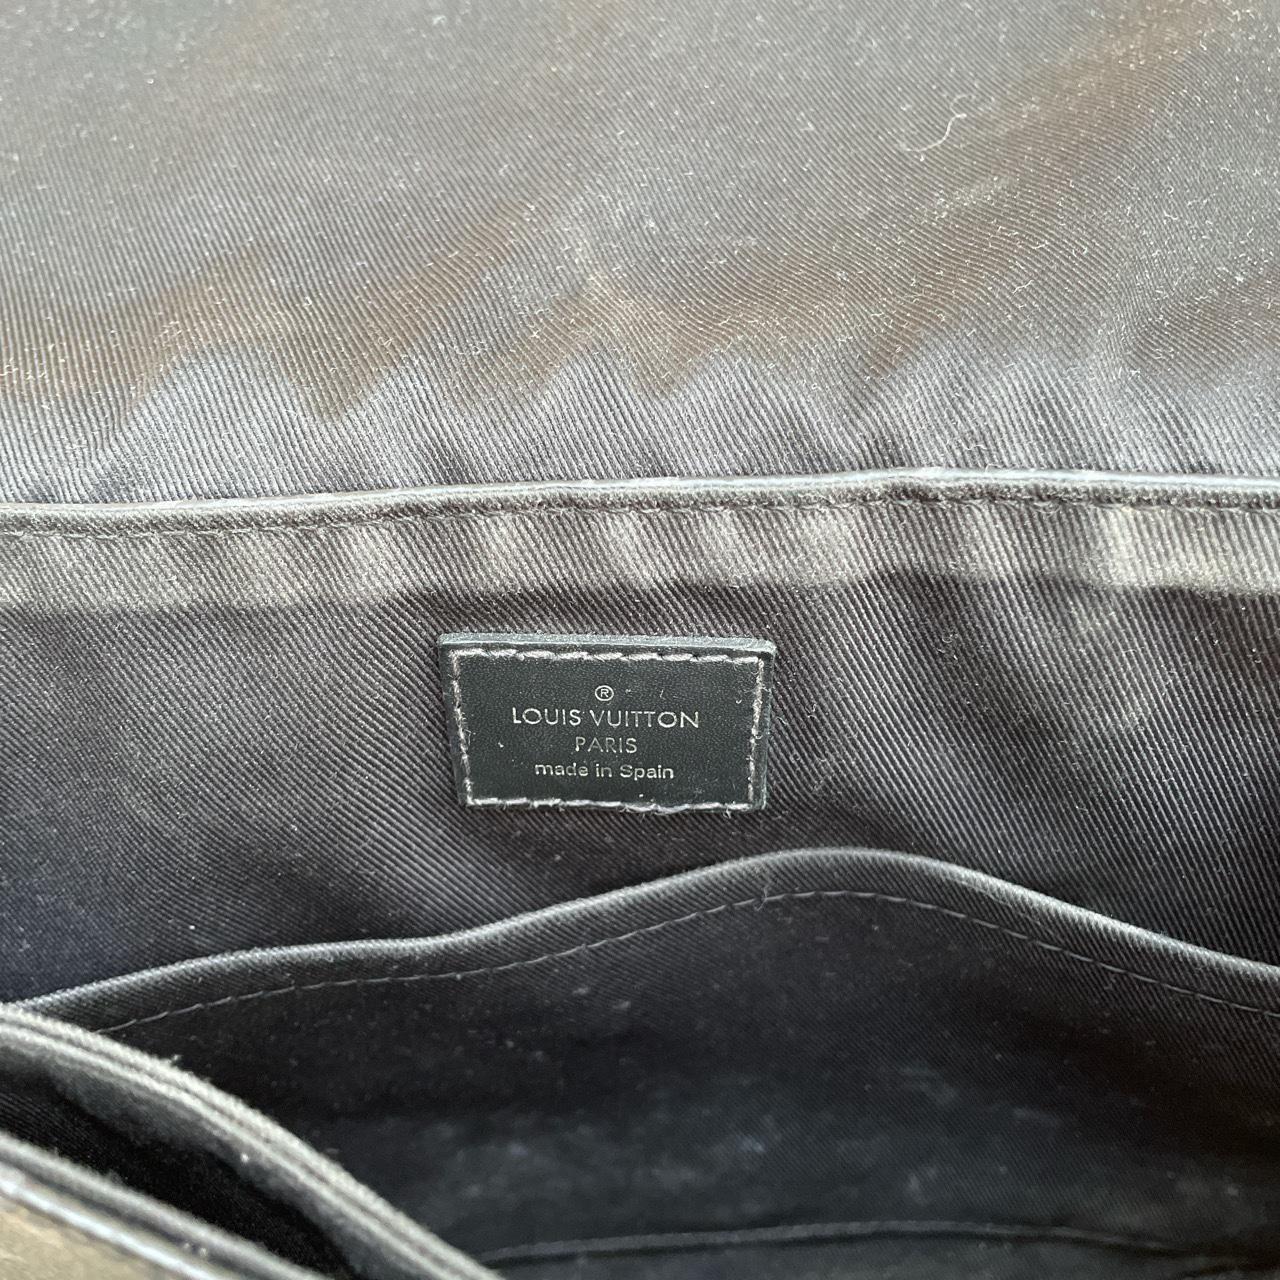 Louis Vuitton messenger bag. - Depop